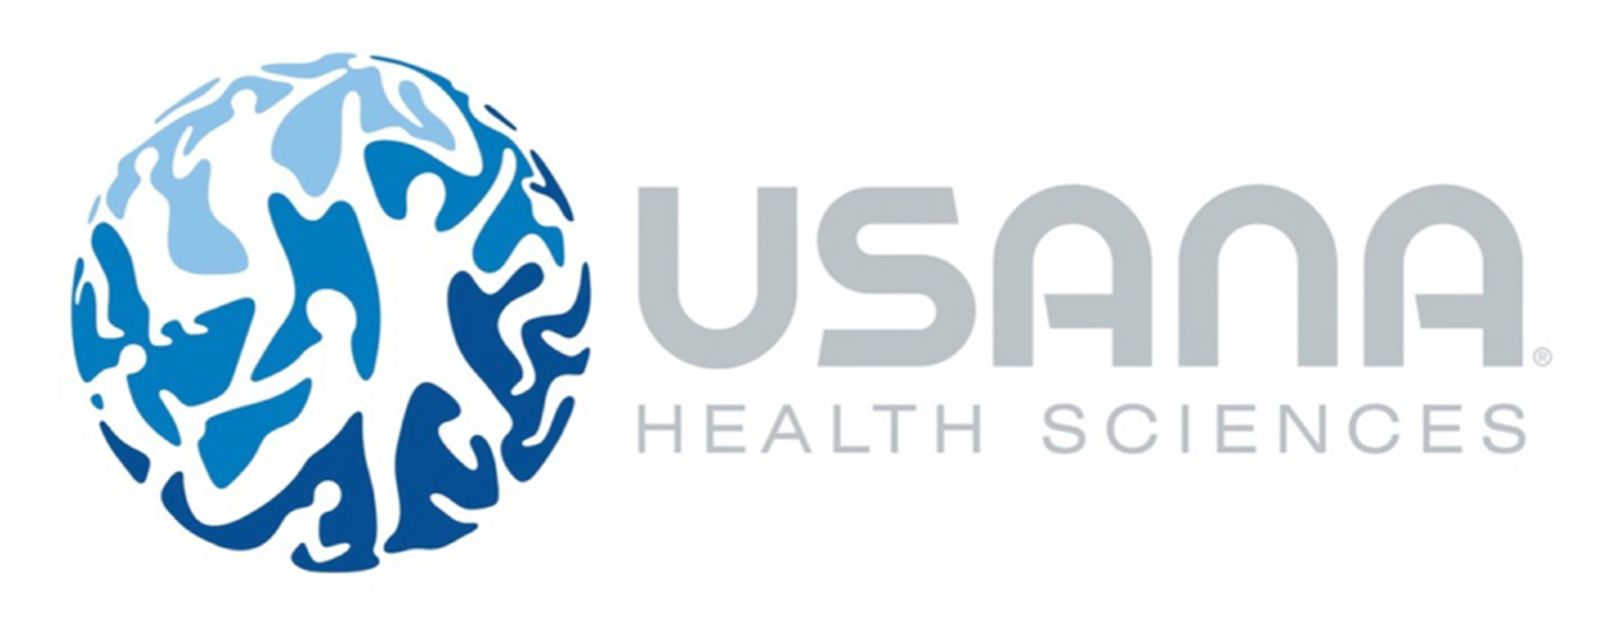 usana logo health and wellness